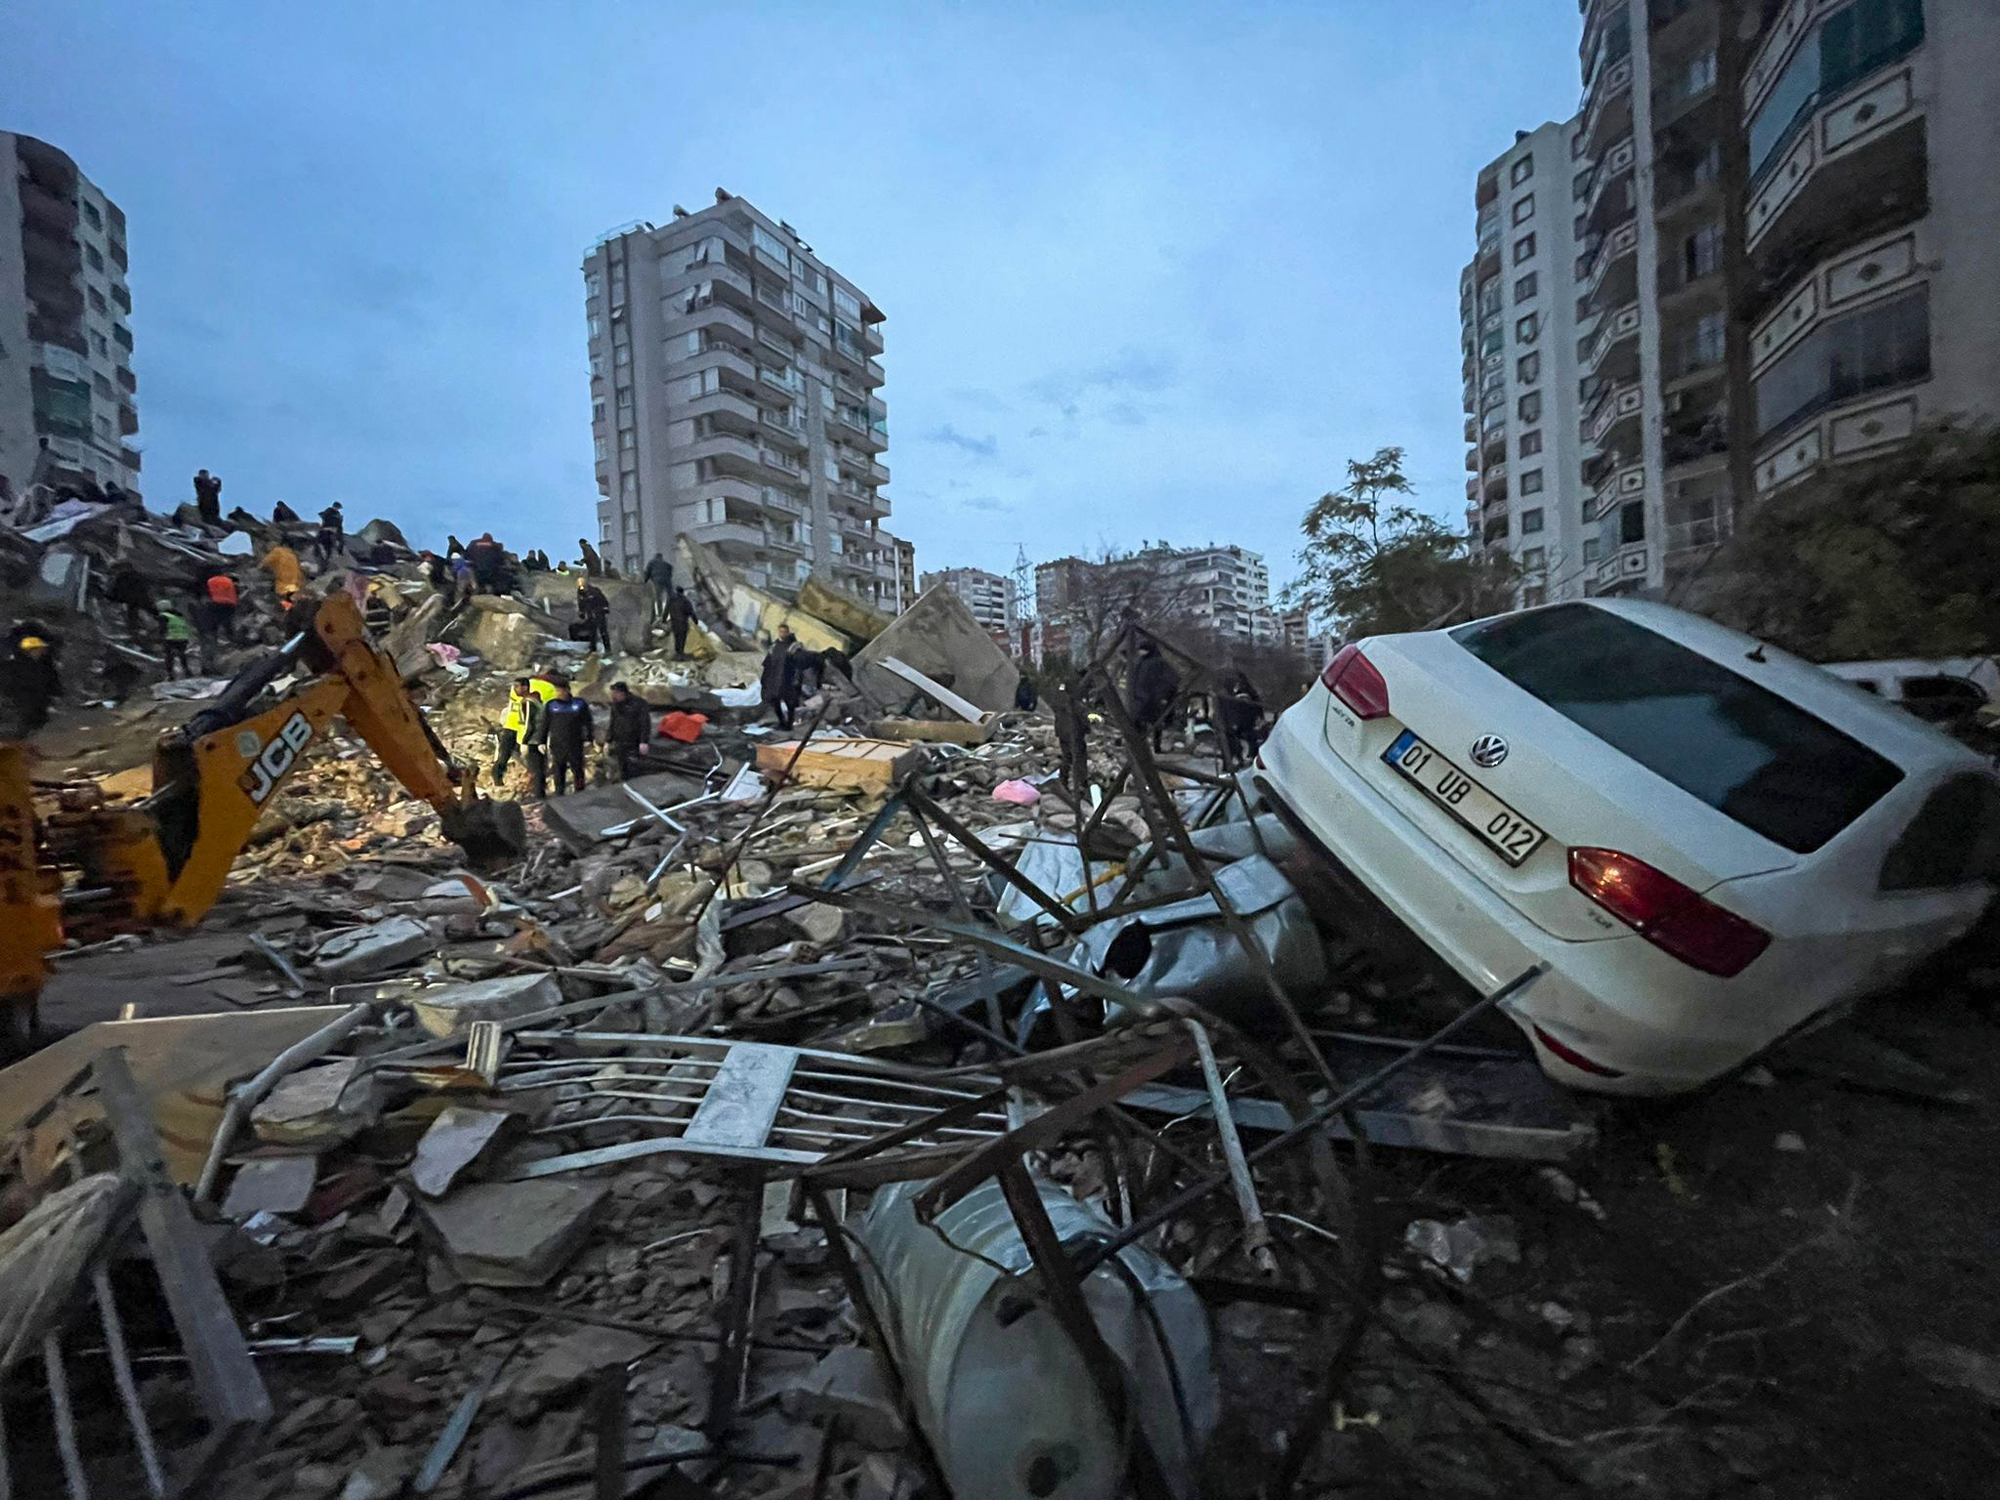 Cuadrillas de socorristas buscan entre los escombros de un edificio a sobrevivientes tras un sismo, en Adana, Turquía, el lunes 6 de febrero de 2023. (DIA Images vía AP)